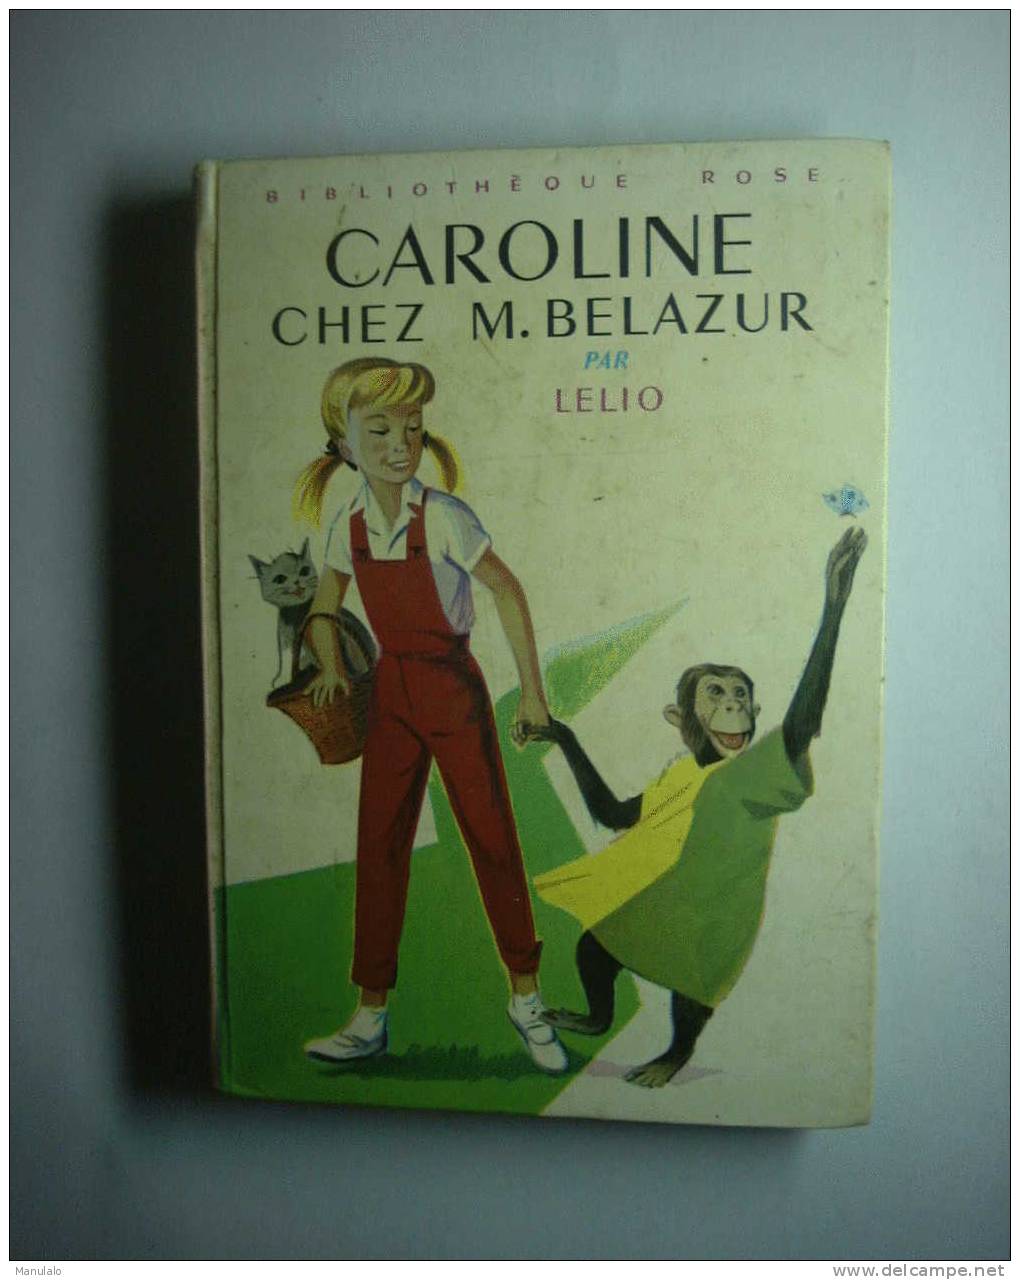 Livre Bibliothèque Rose Hachette De Lélio " Caroline Chez Monsieur Belazur " Année 1974 - Bibliotheque Rose